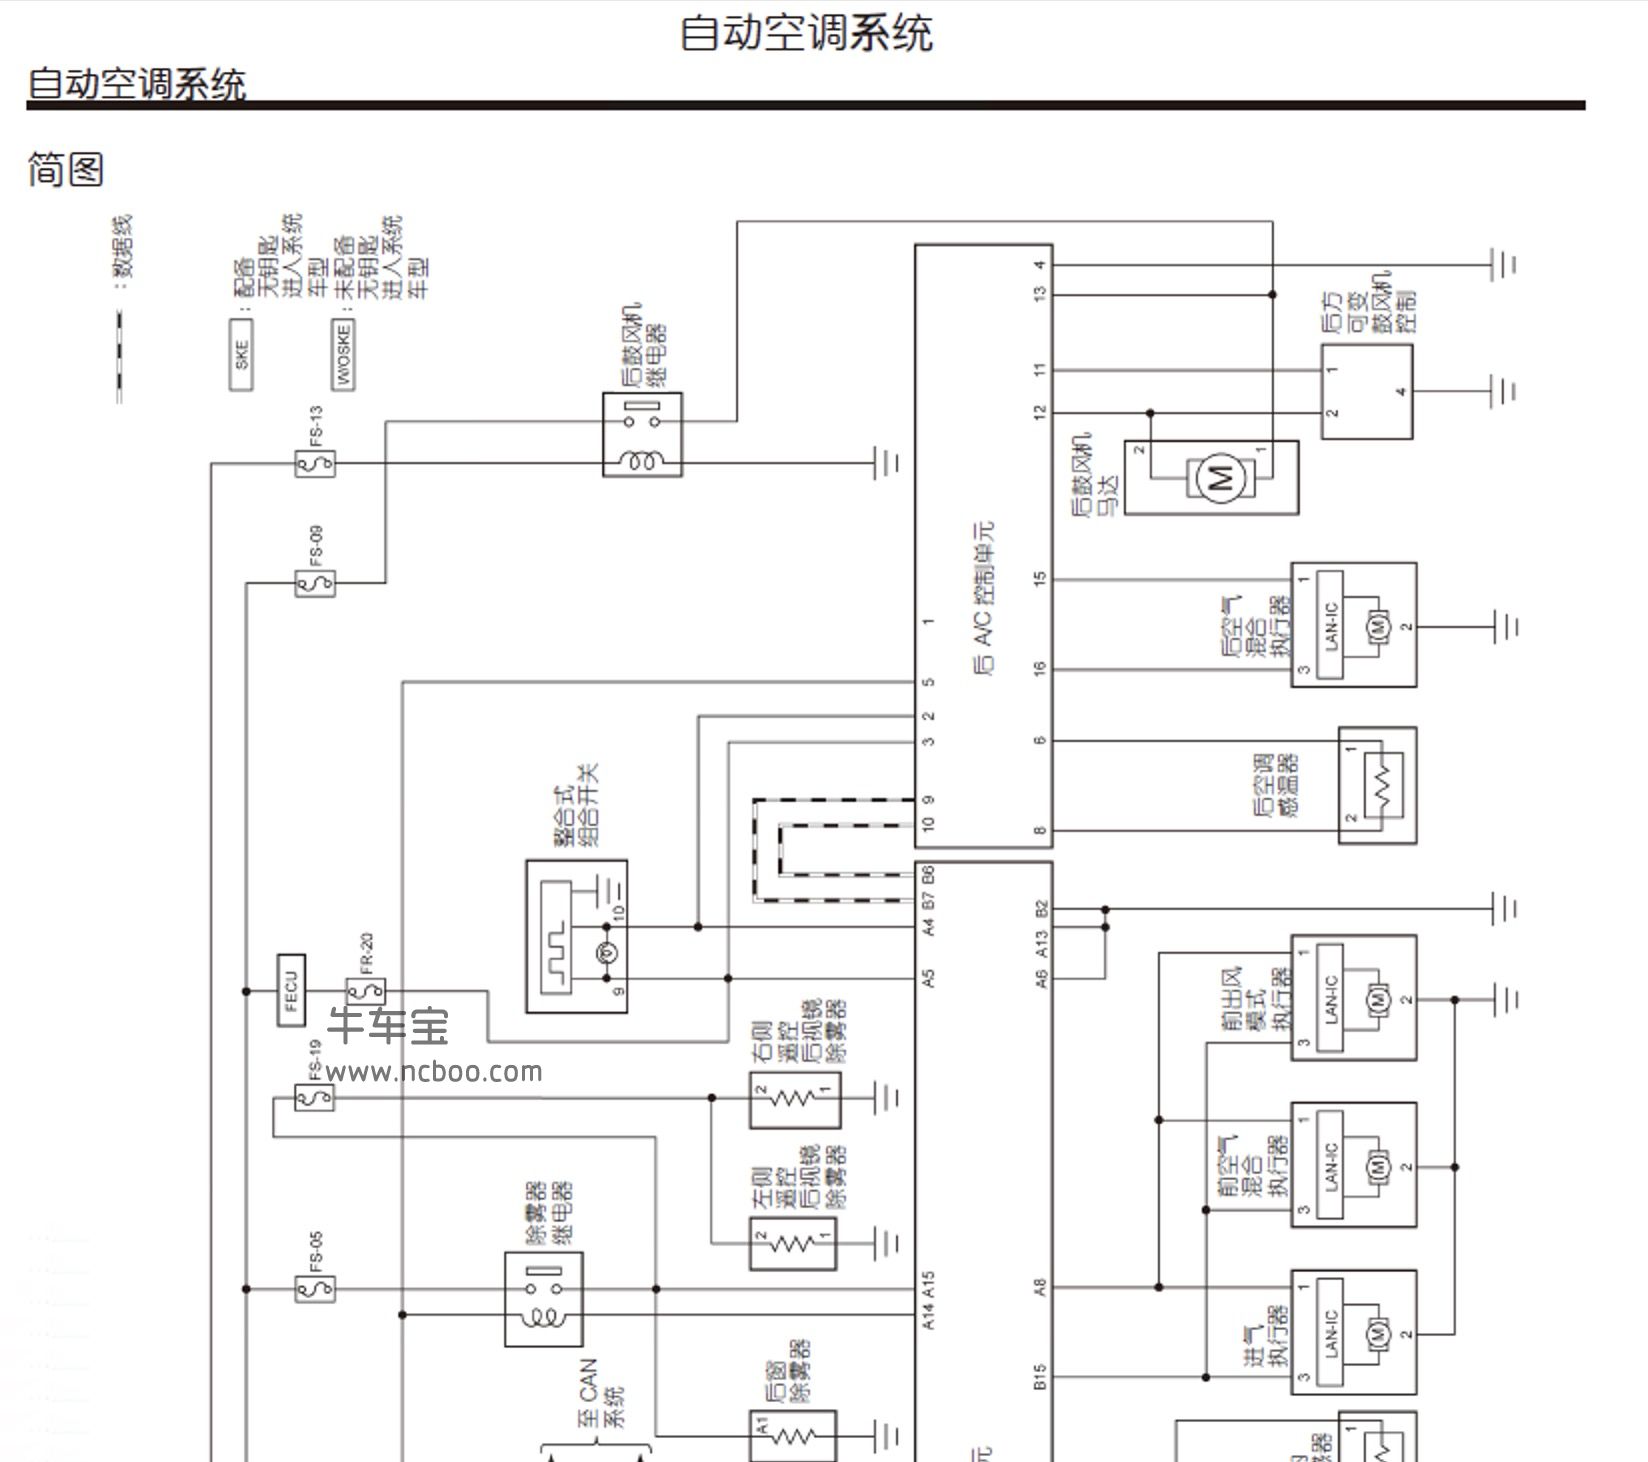 2011-2014款纳智捷大7老款原厂维修手册(含电路图资料)下载